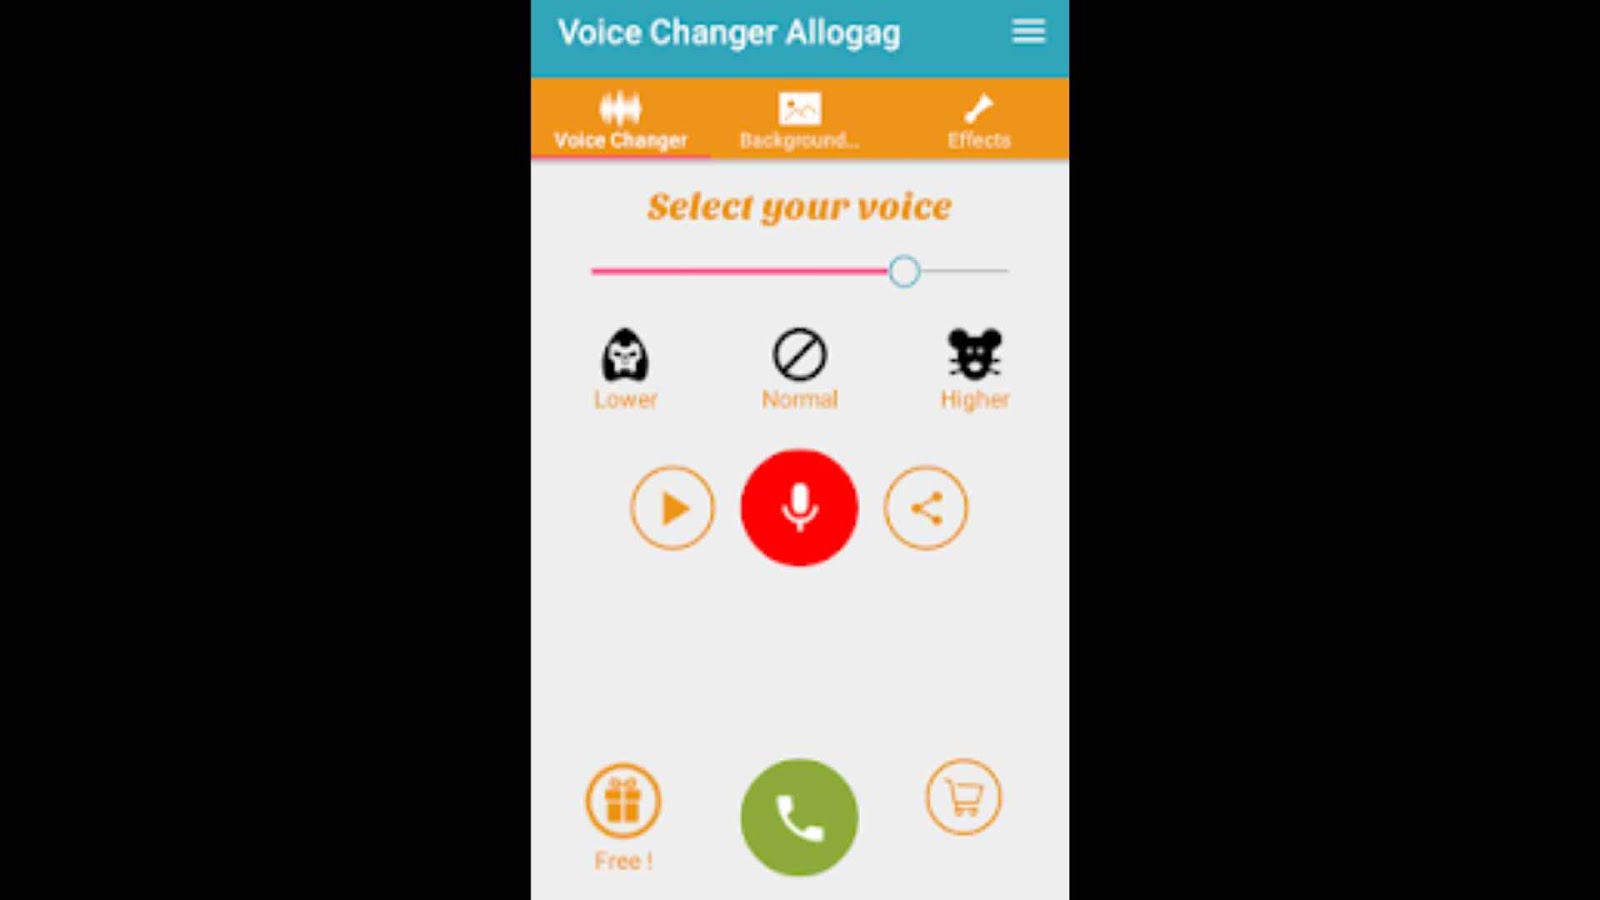 Call Voice changer Allogag